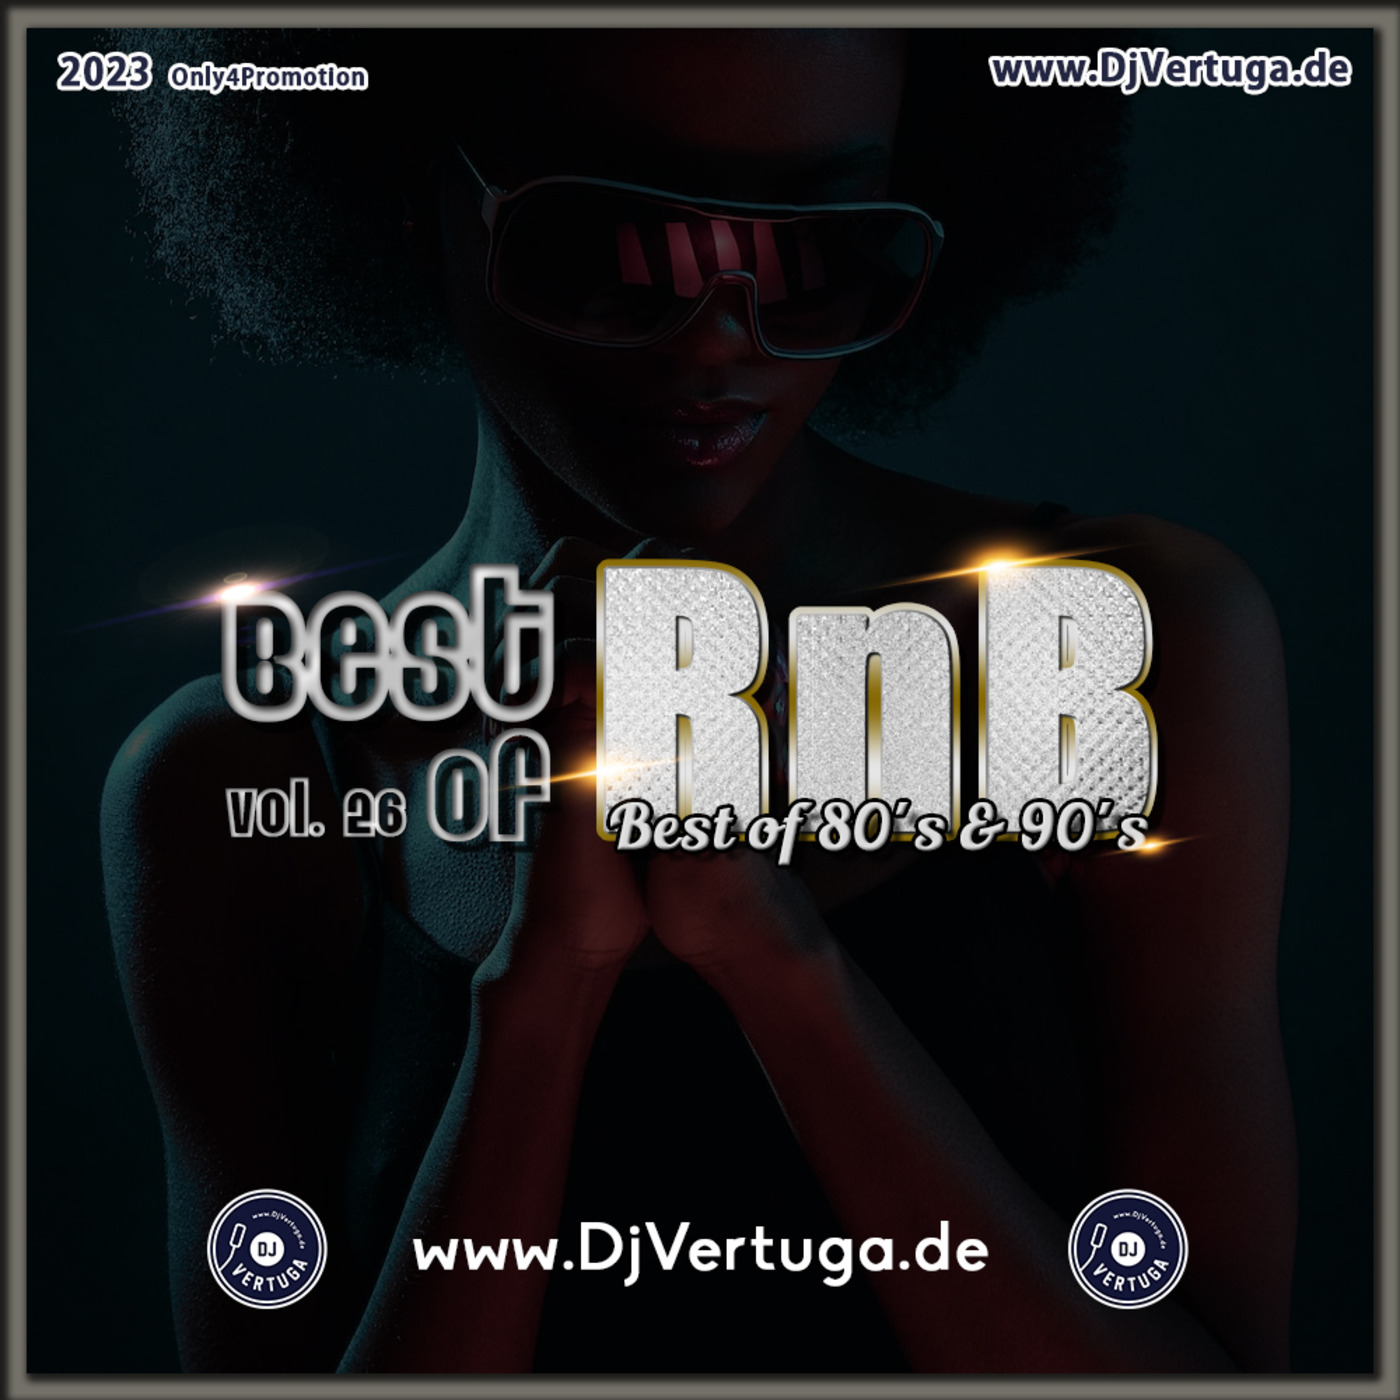 Dj Vertuga  - Best of R&B vol. 26 (Best of 80´s & 90´s R&B)